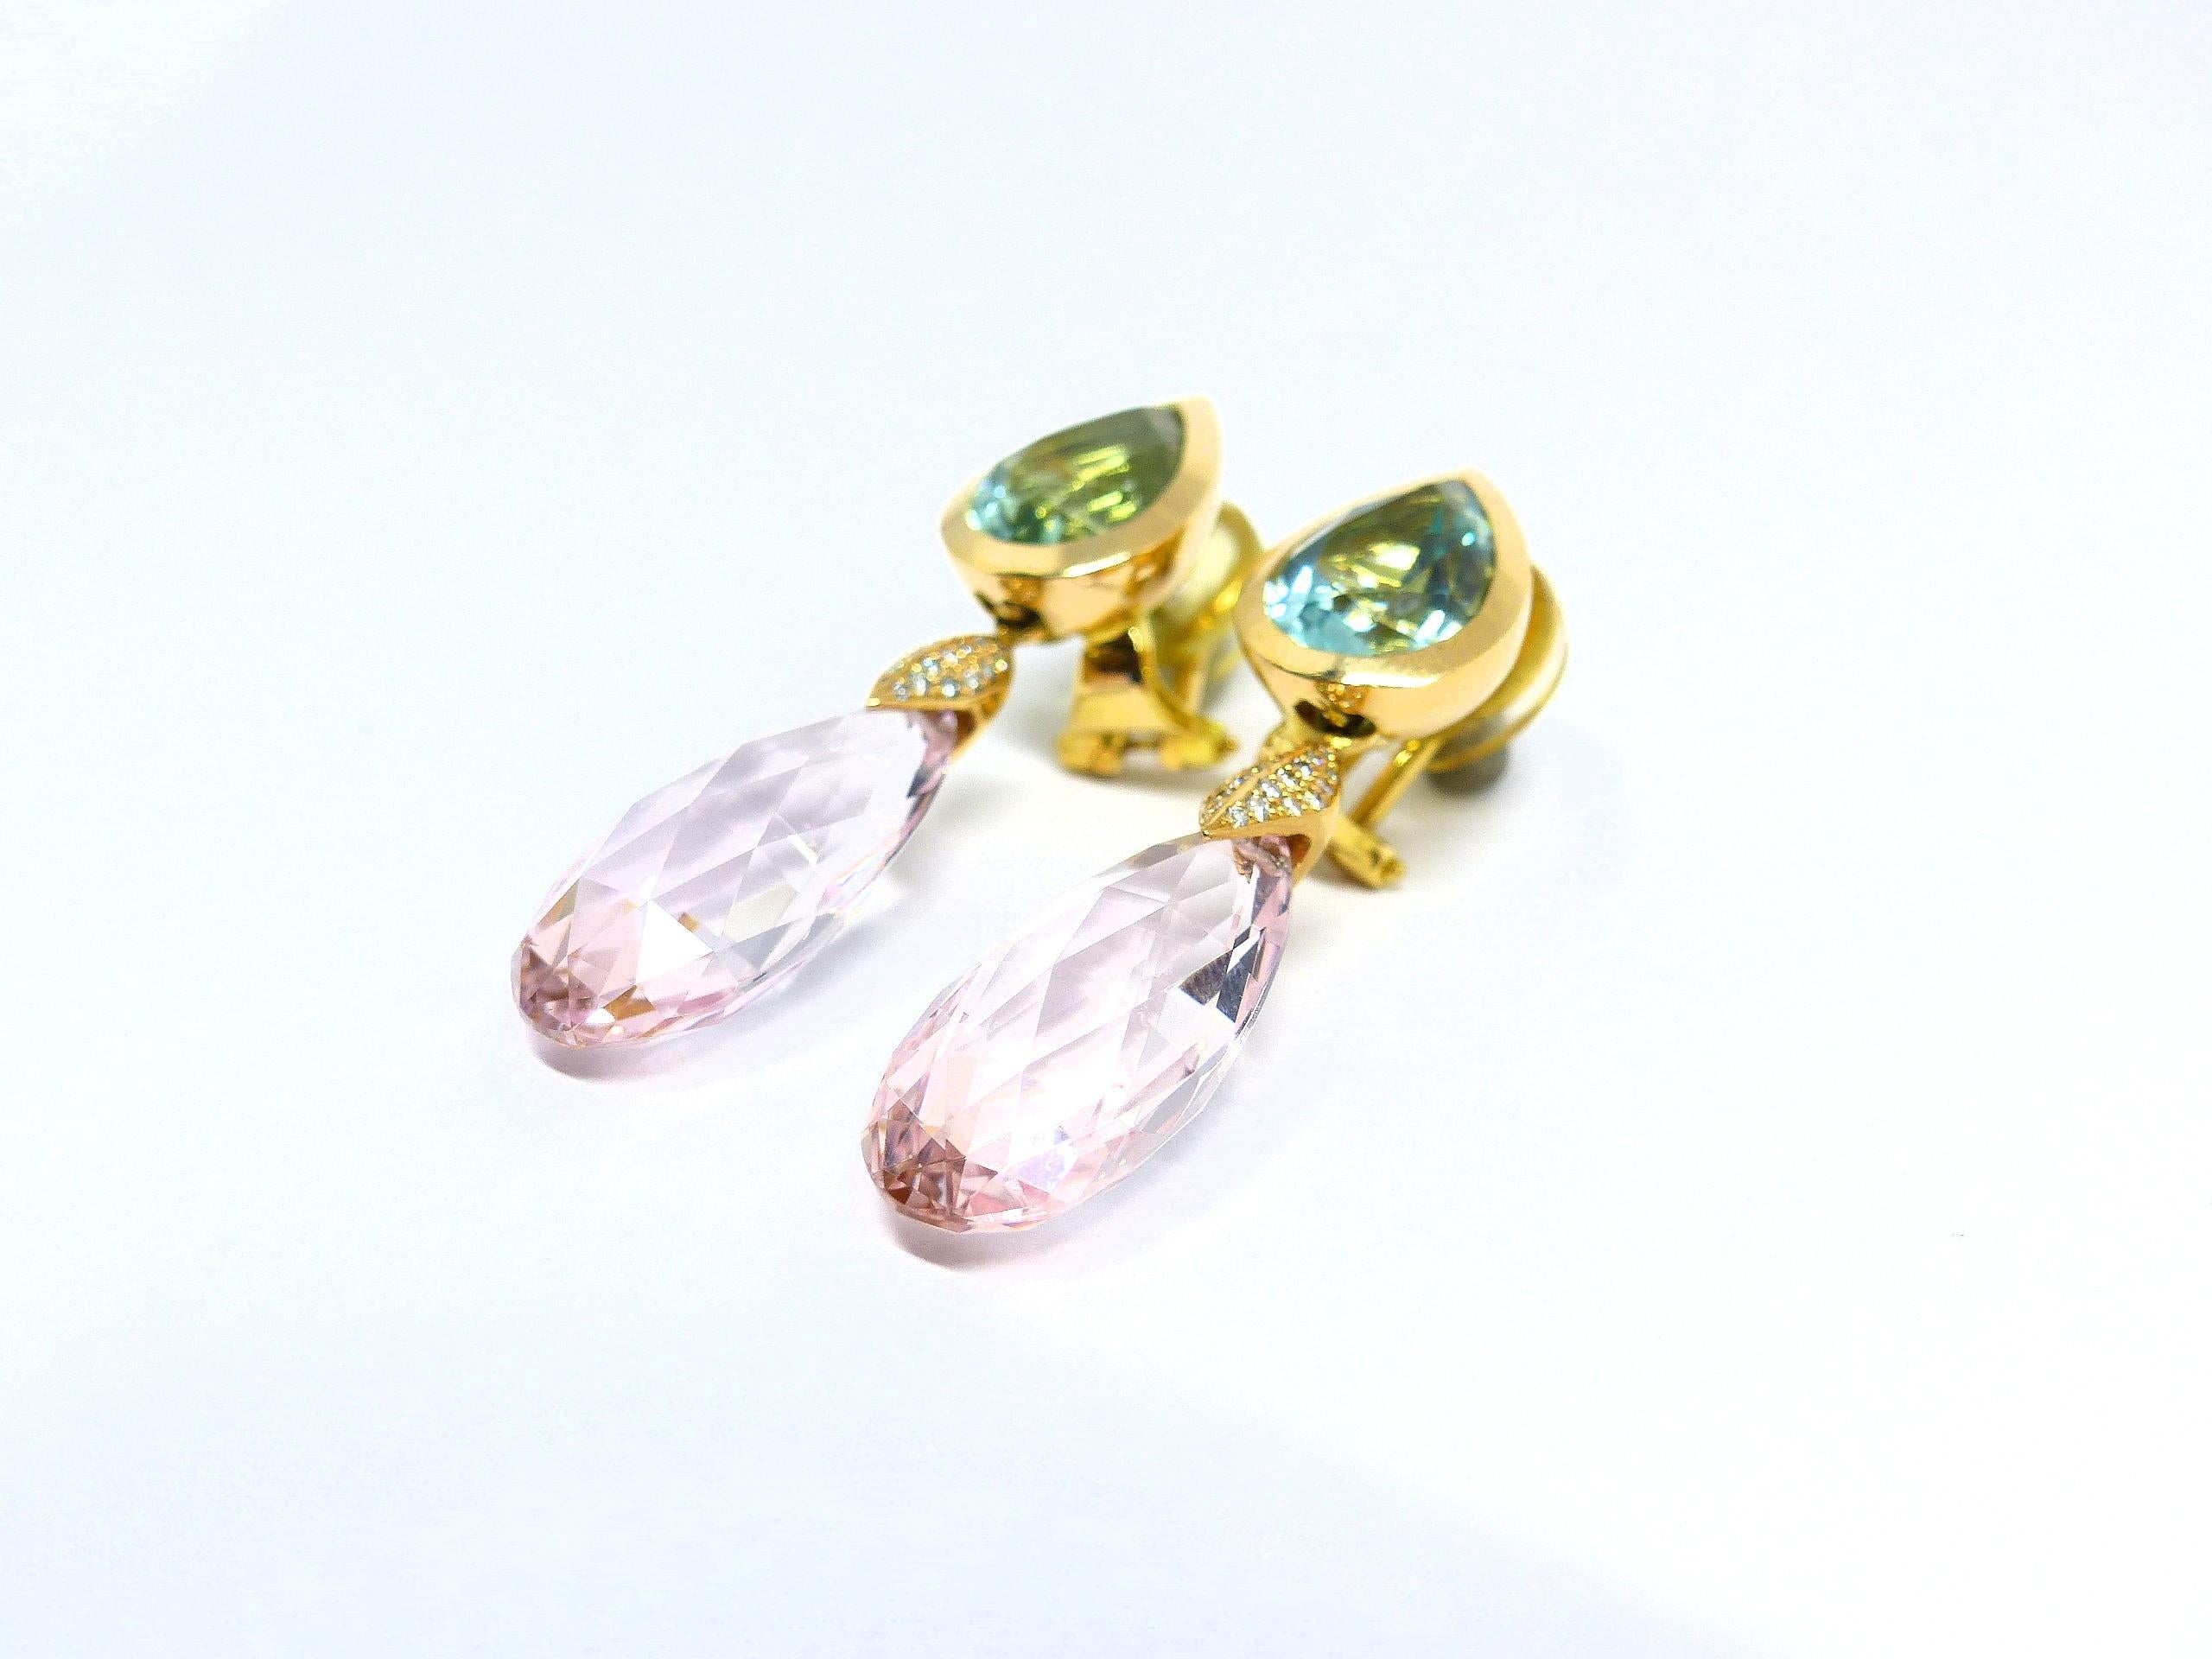 Thomas Leyser est réputé pour ses créations de bijoux contemporains utilisant des pierres précieuses fines.

Ces boucles d'oreilles en or rose 18k (10,26g) sont serties de 2 héliodors fins (facettés, en forme de poire, 12x9mm, 6,15ct) et de 2